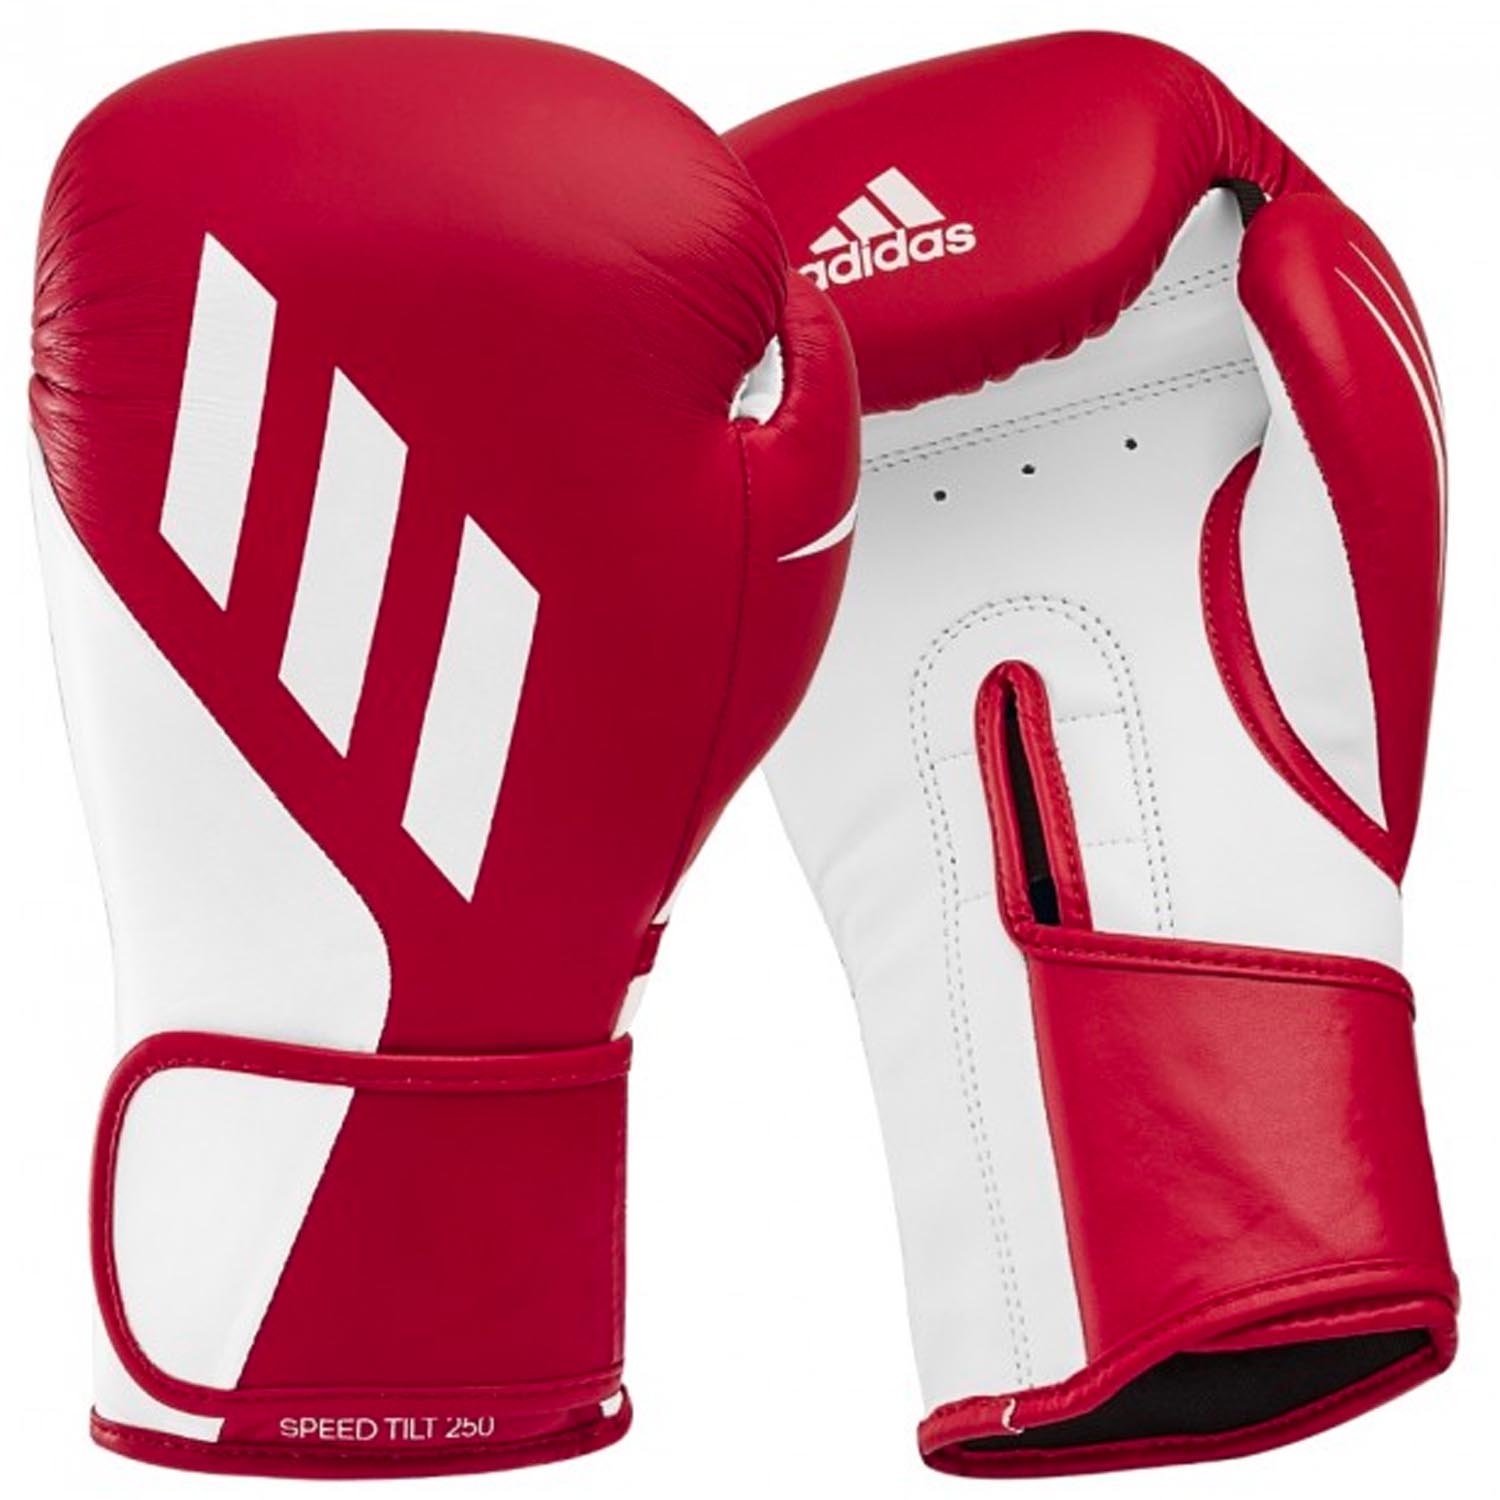 adidas Boxing Gloves, Speed, Tilt, 250, red-white